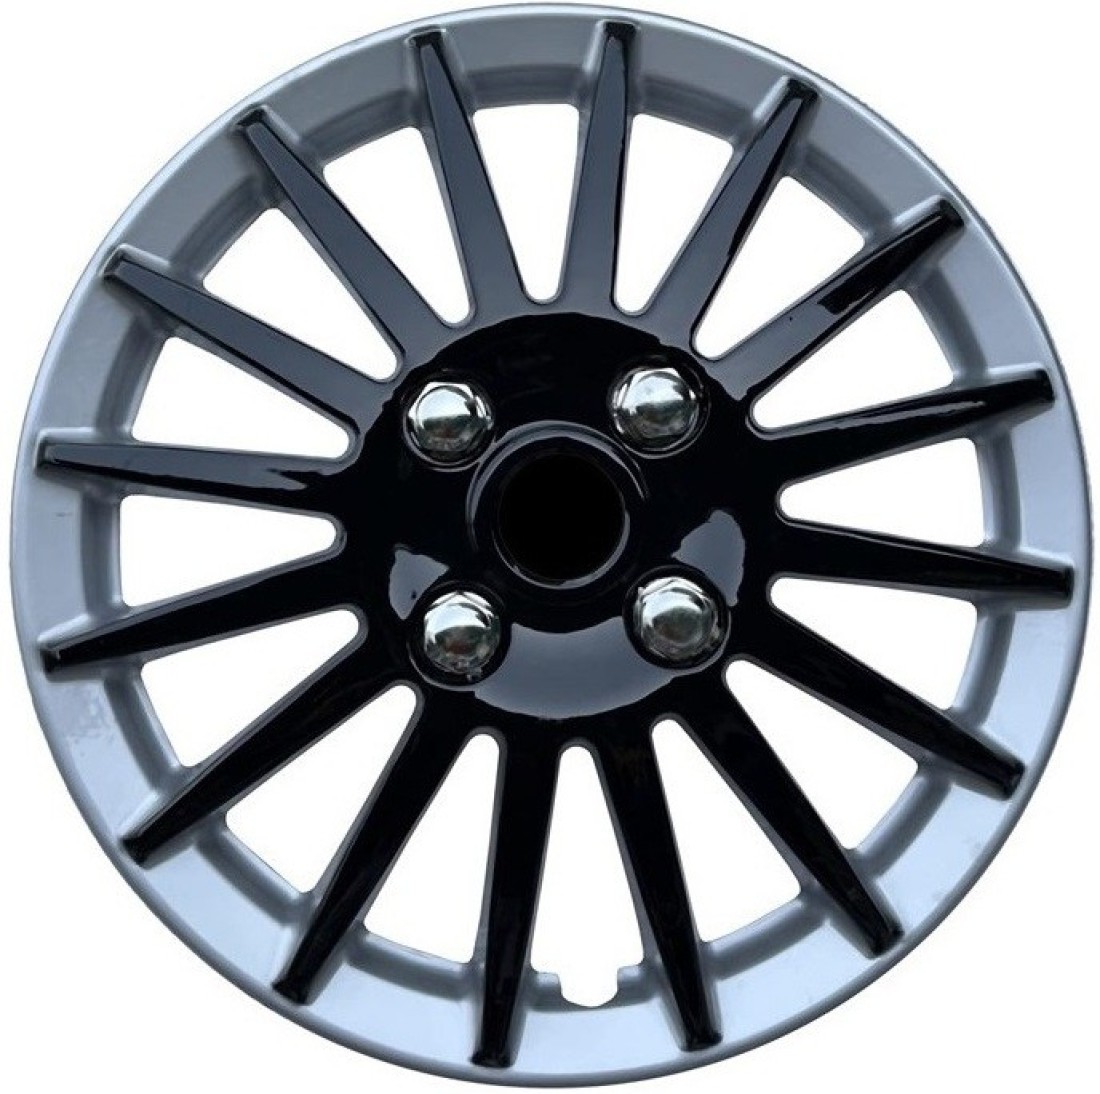 HUDMOZ TIGOR 14 Inches CMRDC-B Wheel Caps / Hubcaps Wheel Cover For Tata  Tigor Price in India - Buy HUDMOZ TIGOR 14 Inches CMRDC-B Wheel Caps / Hubcaps  Wheel Cover For Tata